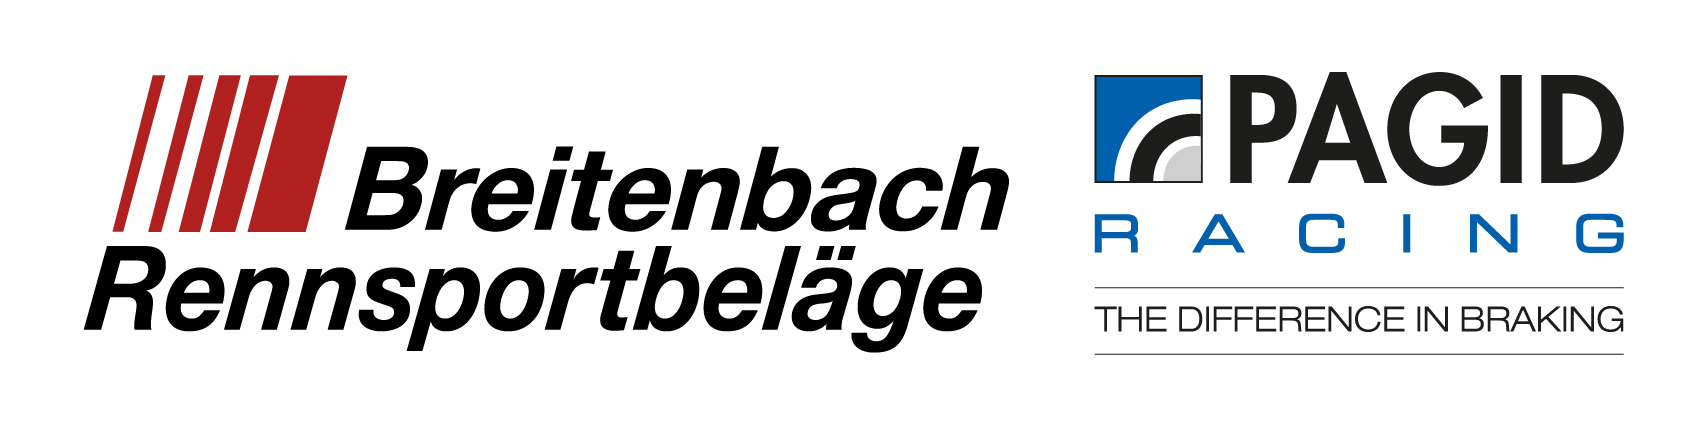 Breitenbach-Rennsport